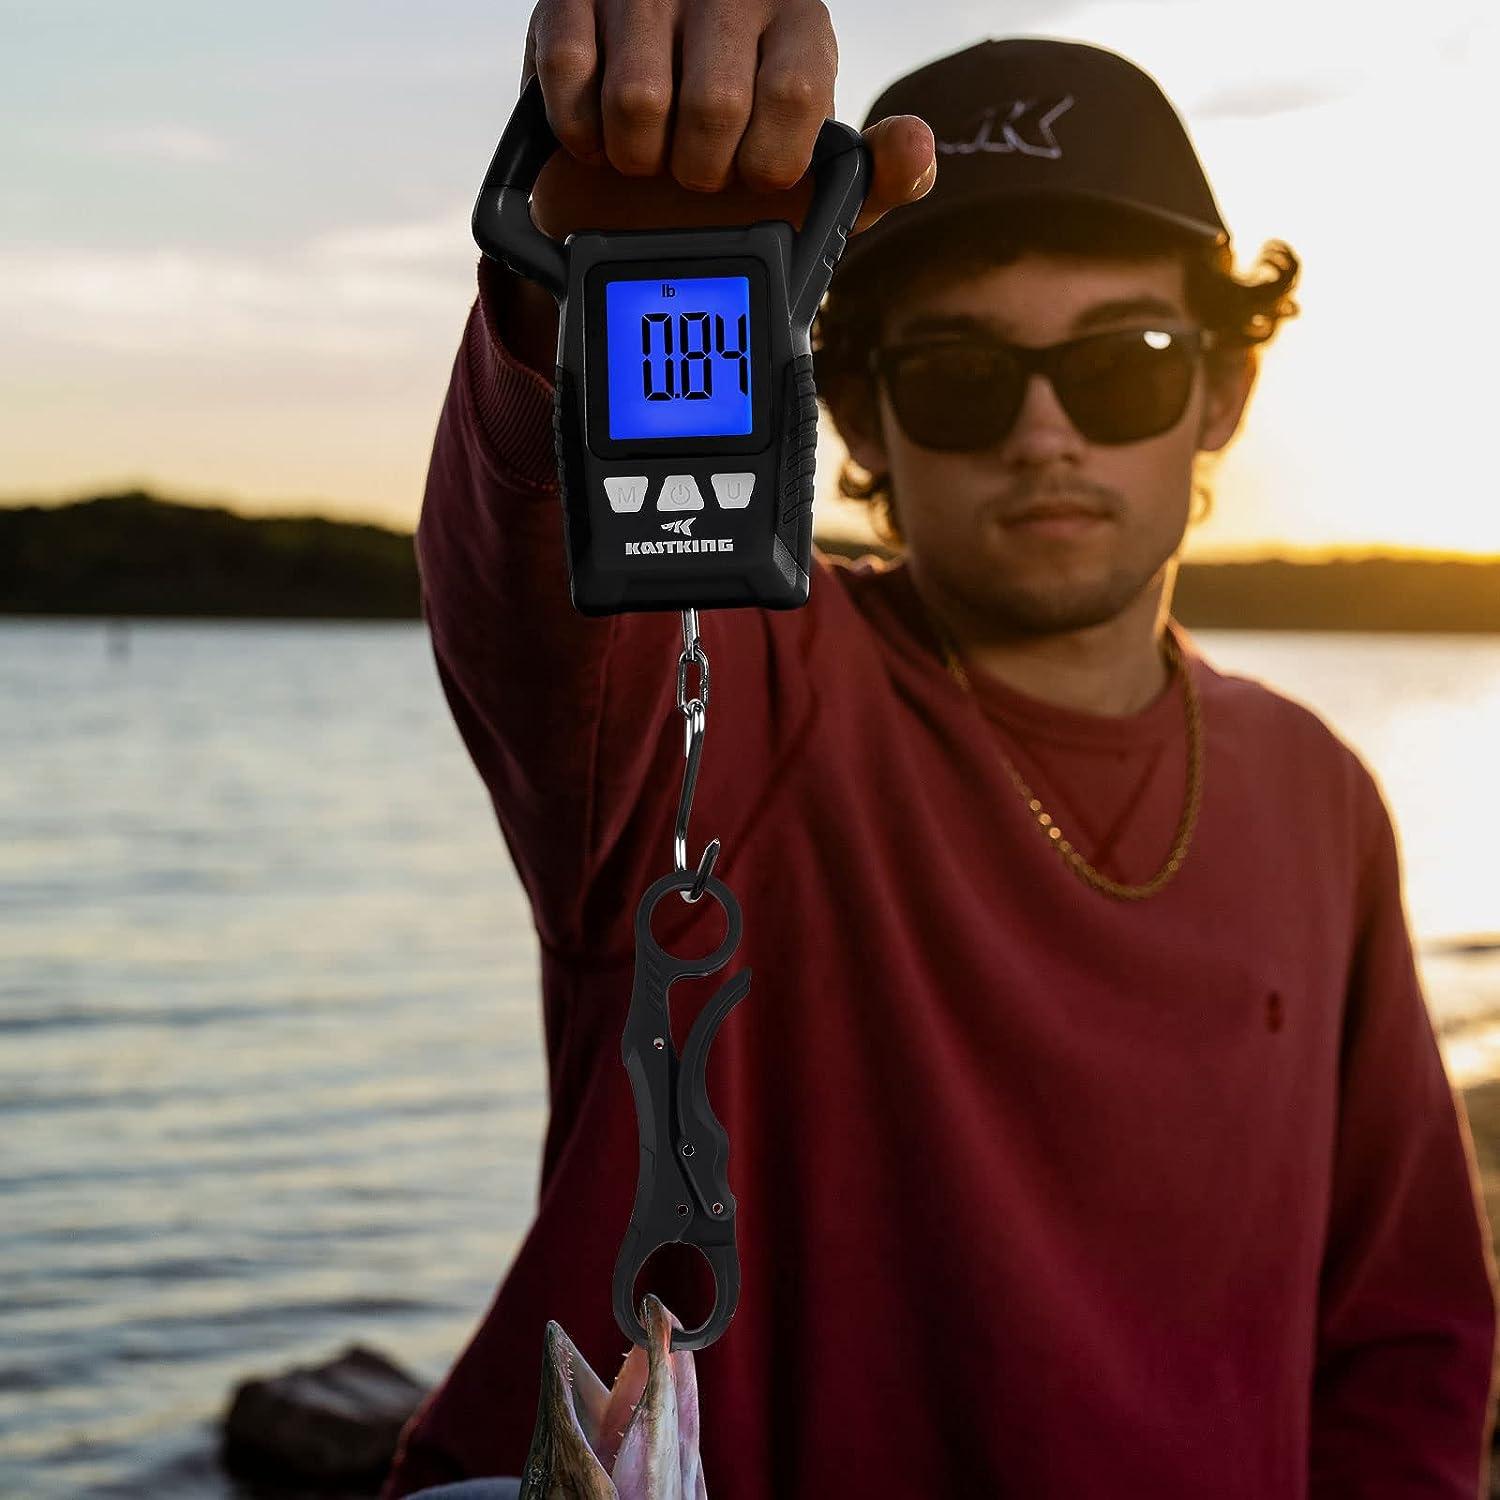 Fishing Scales Digital Waterproof, Waterproof Fish Weighing